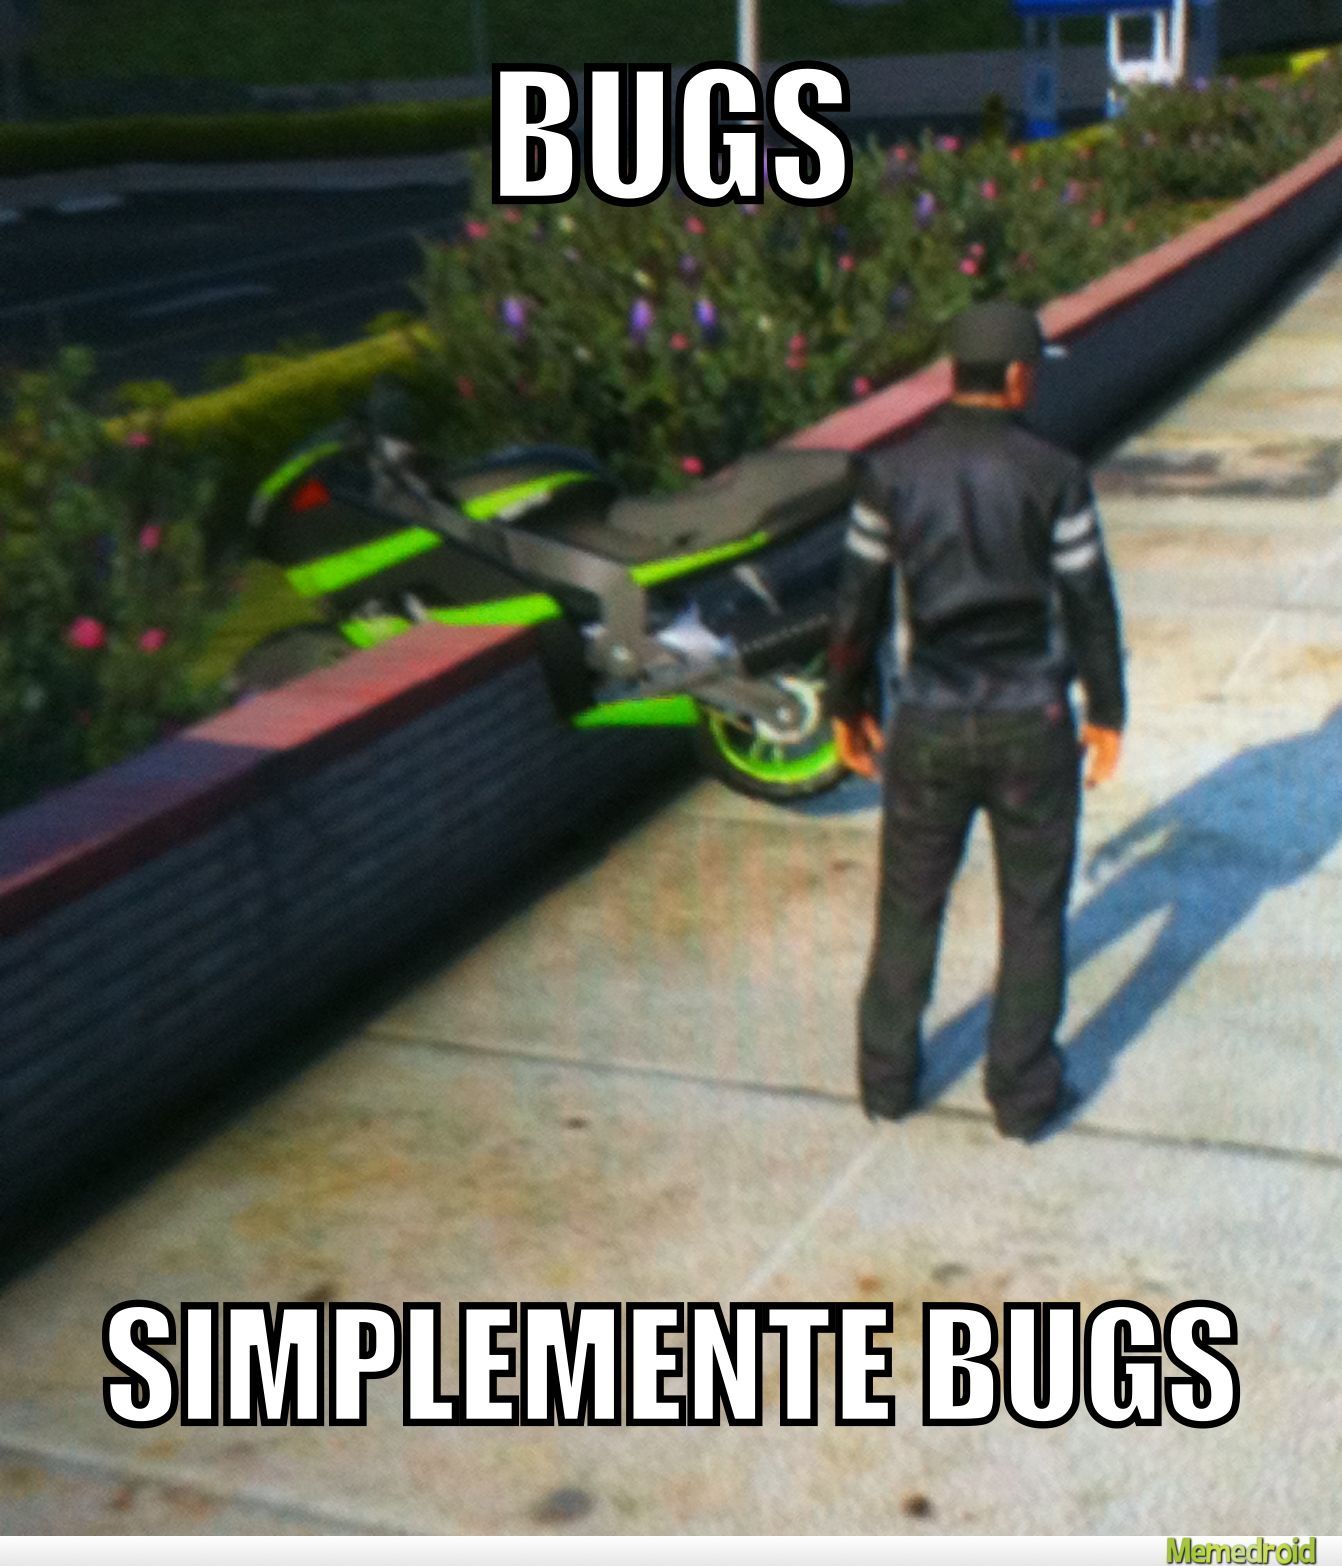 Bugs donde? - meme